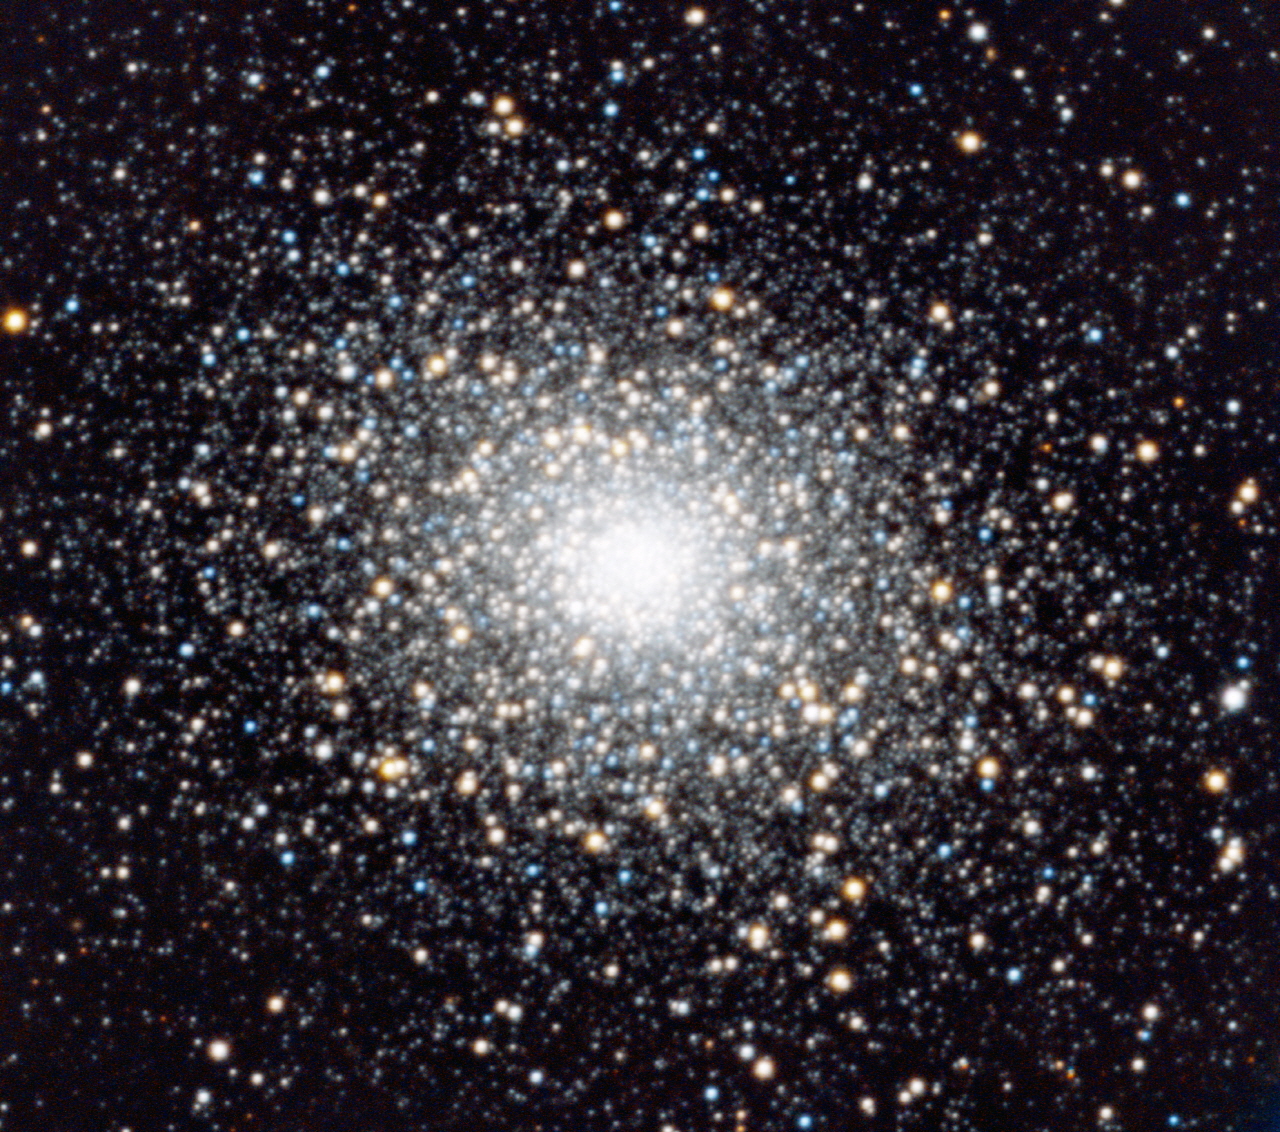 덕흥천문대 NYSC 1m 망원경으로 촬영한 메시에 목록 5번. 다양한 밝기와 색을 가진 별들이 구형으로 모여 있는 것을 확인할 수 있다.